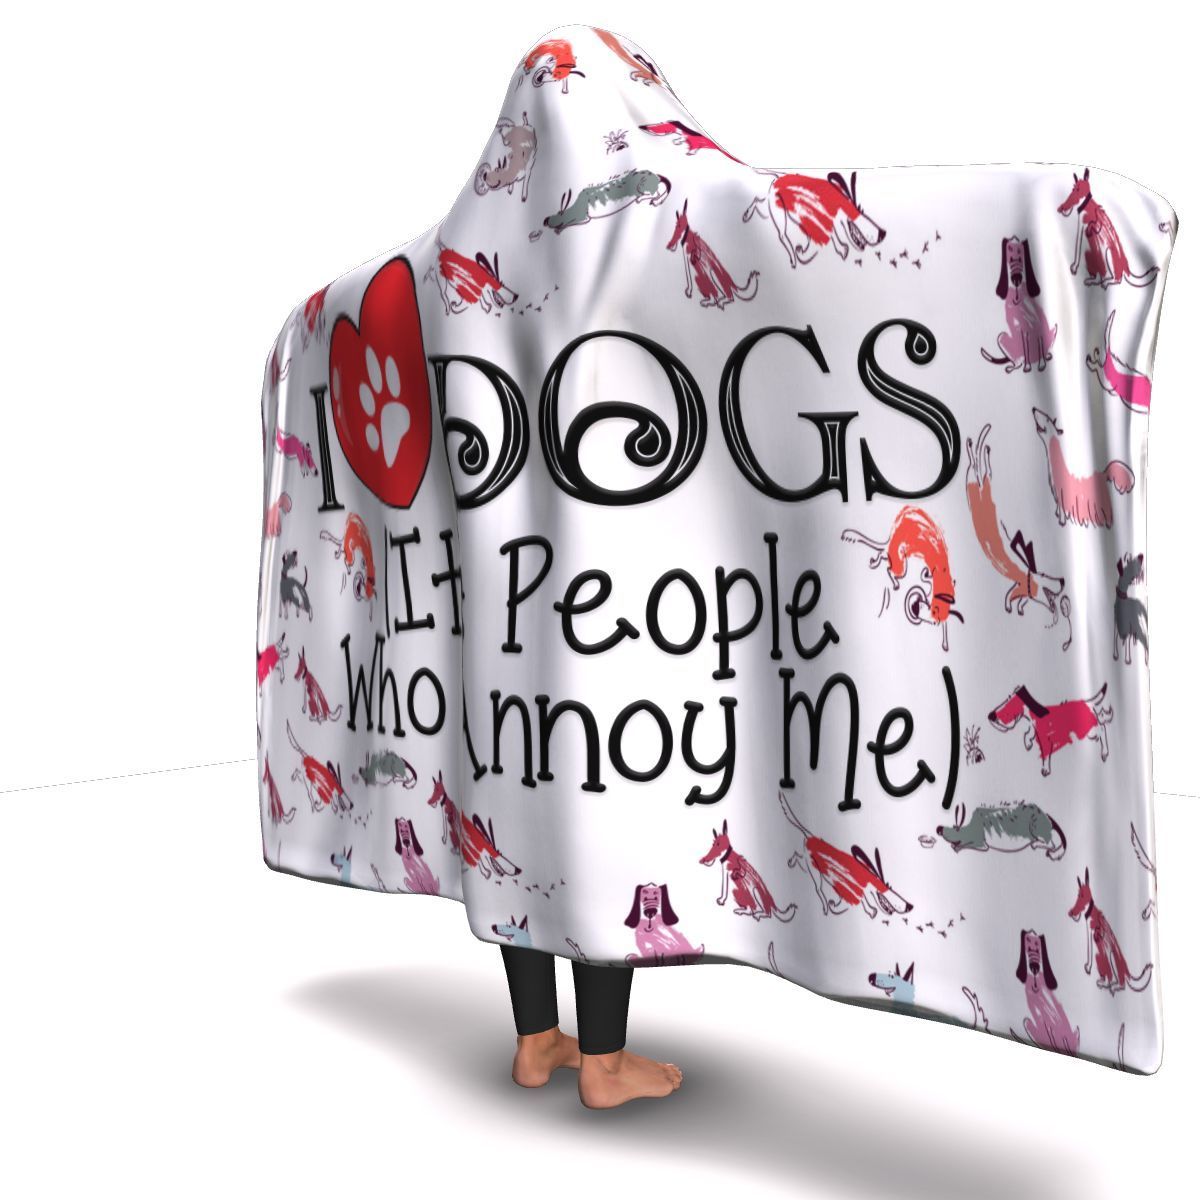 I Love Dogs - Hooded Blanket.